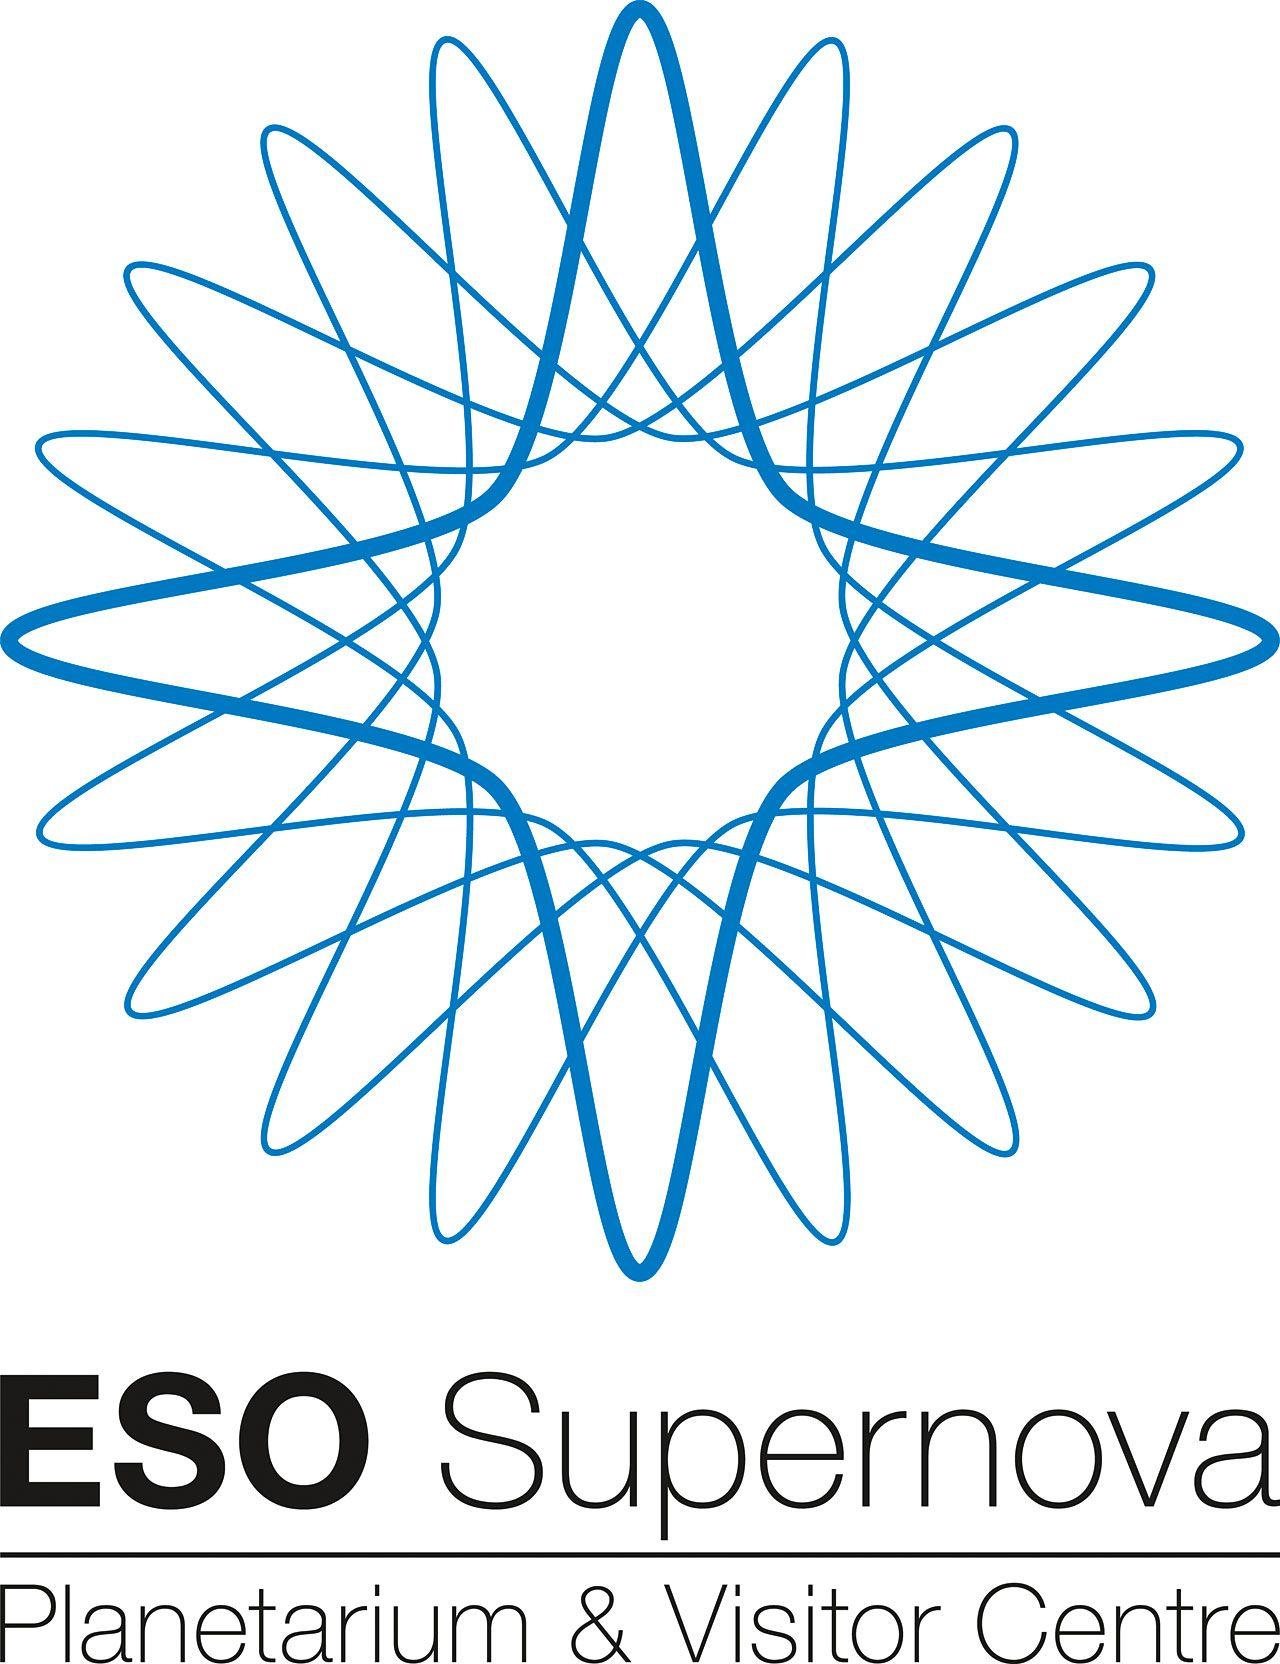 Supernova Logo - About the logo